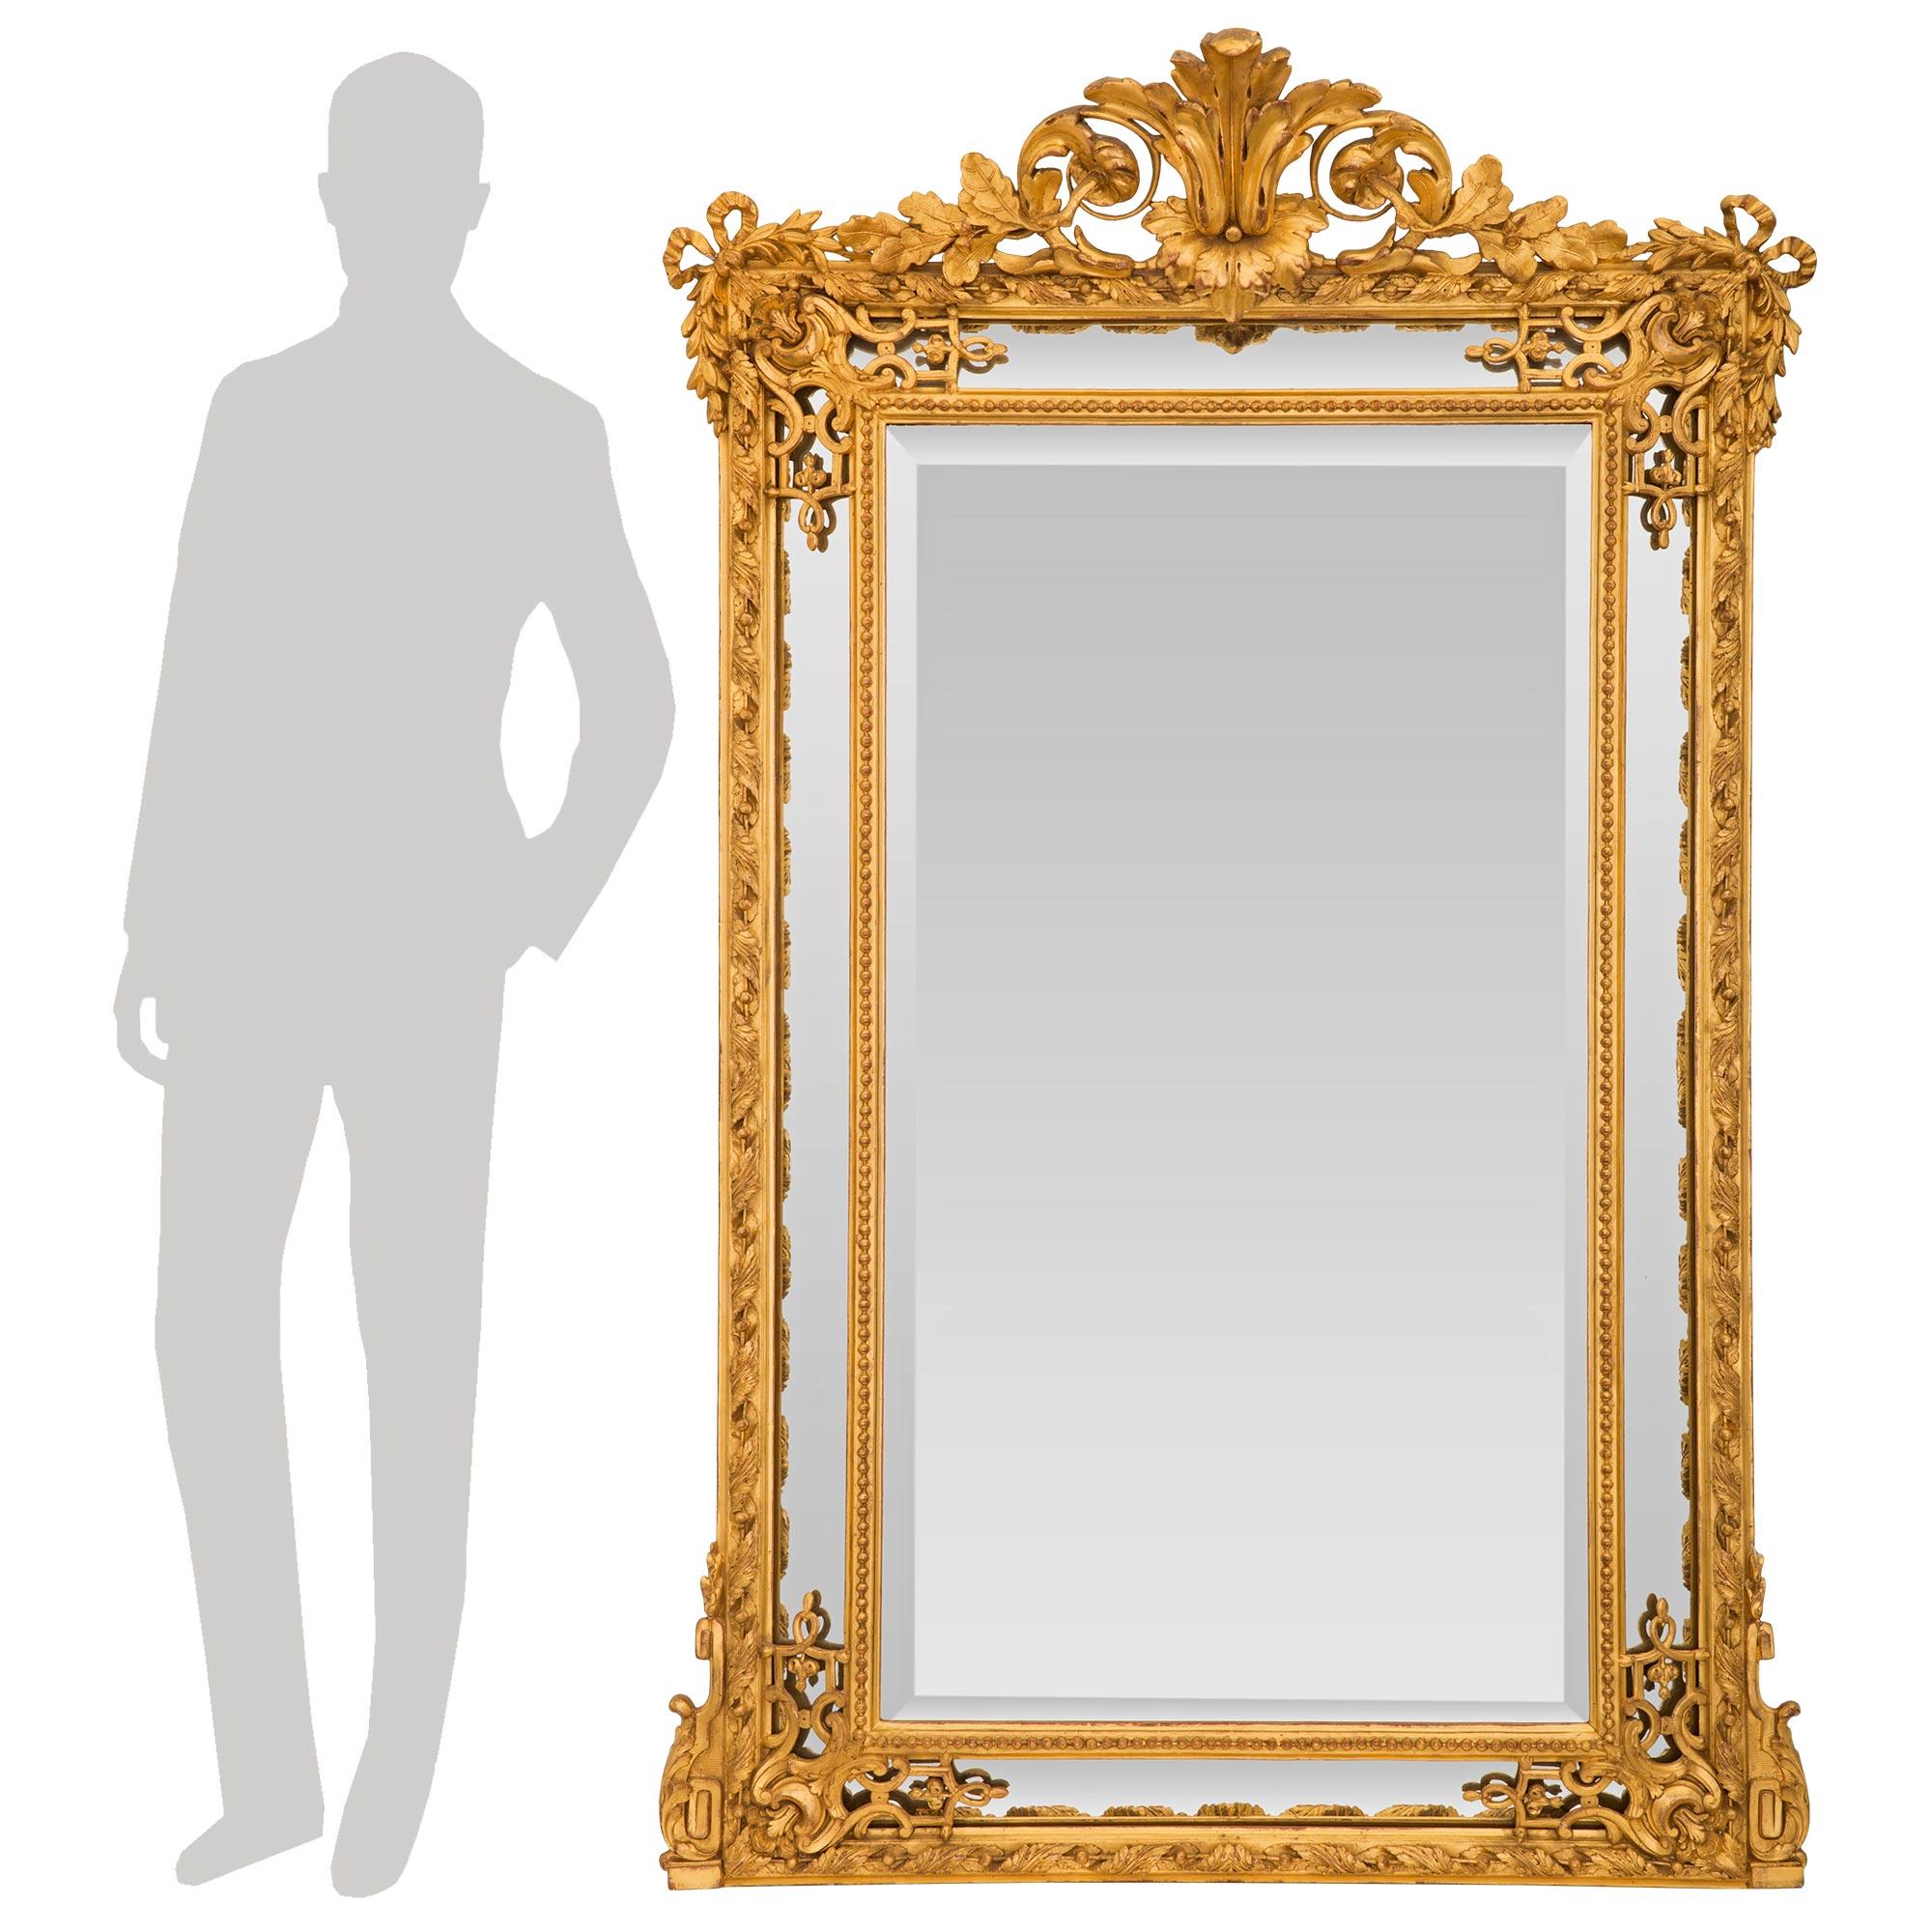 Eine atemberaubende Französisch 19. Jahrhundert Louis XVI st. doppelt gerahmt Vergoldung Spiegel. Der Spiegel behält alle seine ursprünglichen Spiegelplatten durchgehend. Die zentrale abgeschrägte Spiegelplatte ist von einer feinen Perlenbordüre